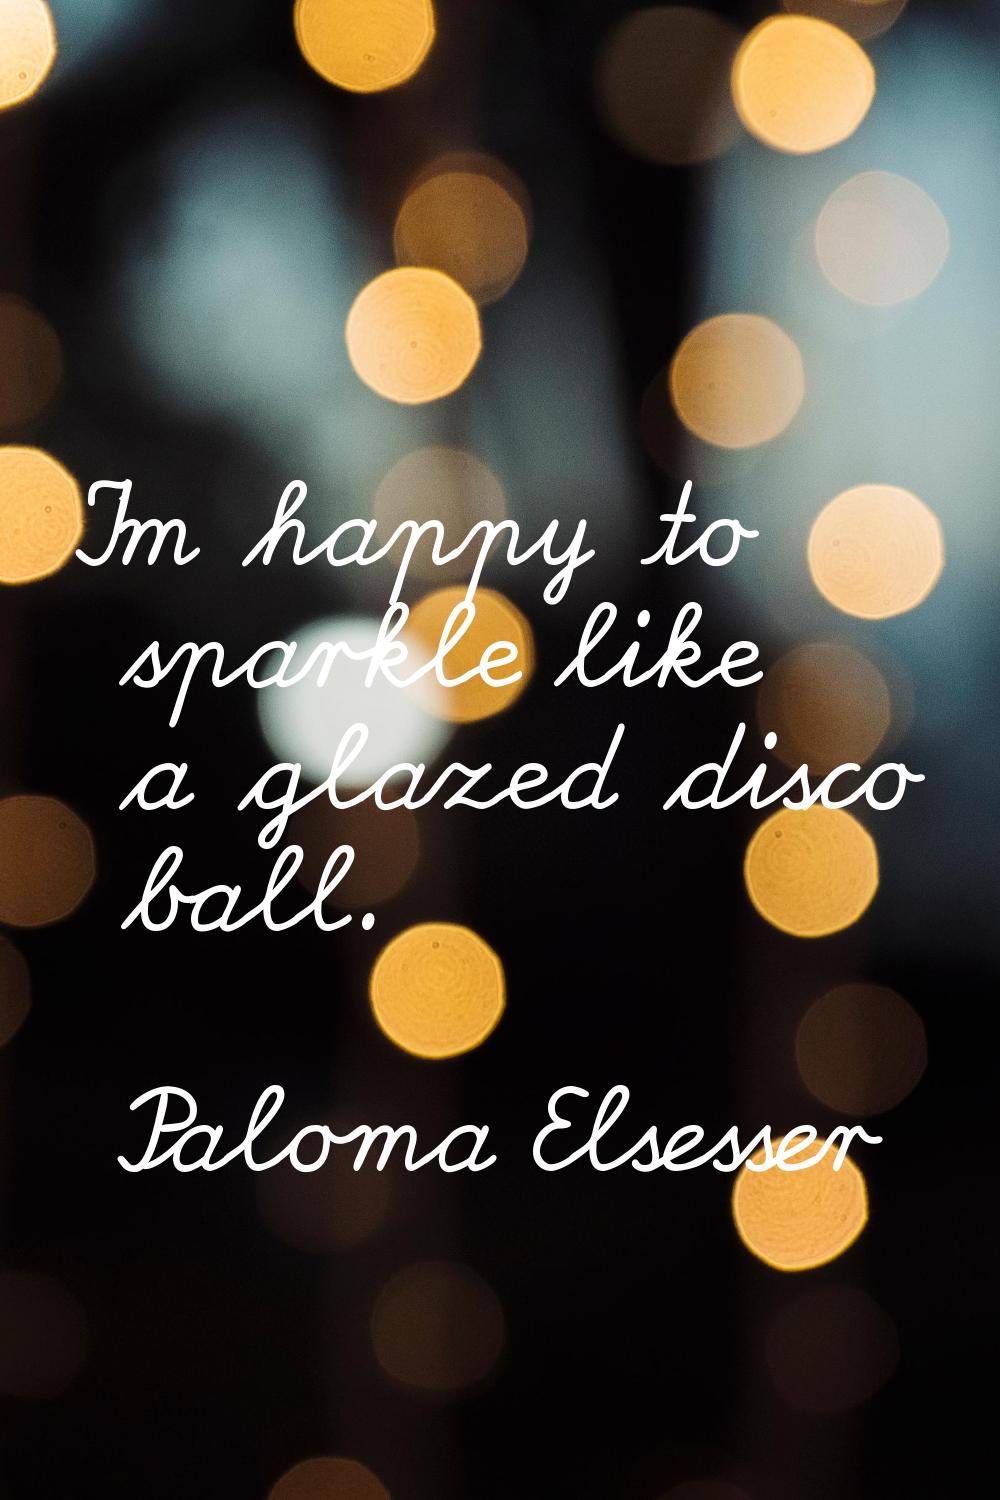 I'm happy to sparkle like a glazed disco ball.